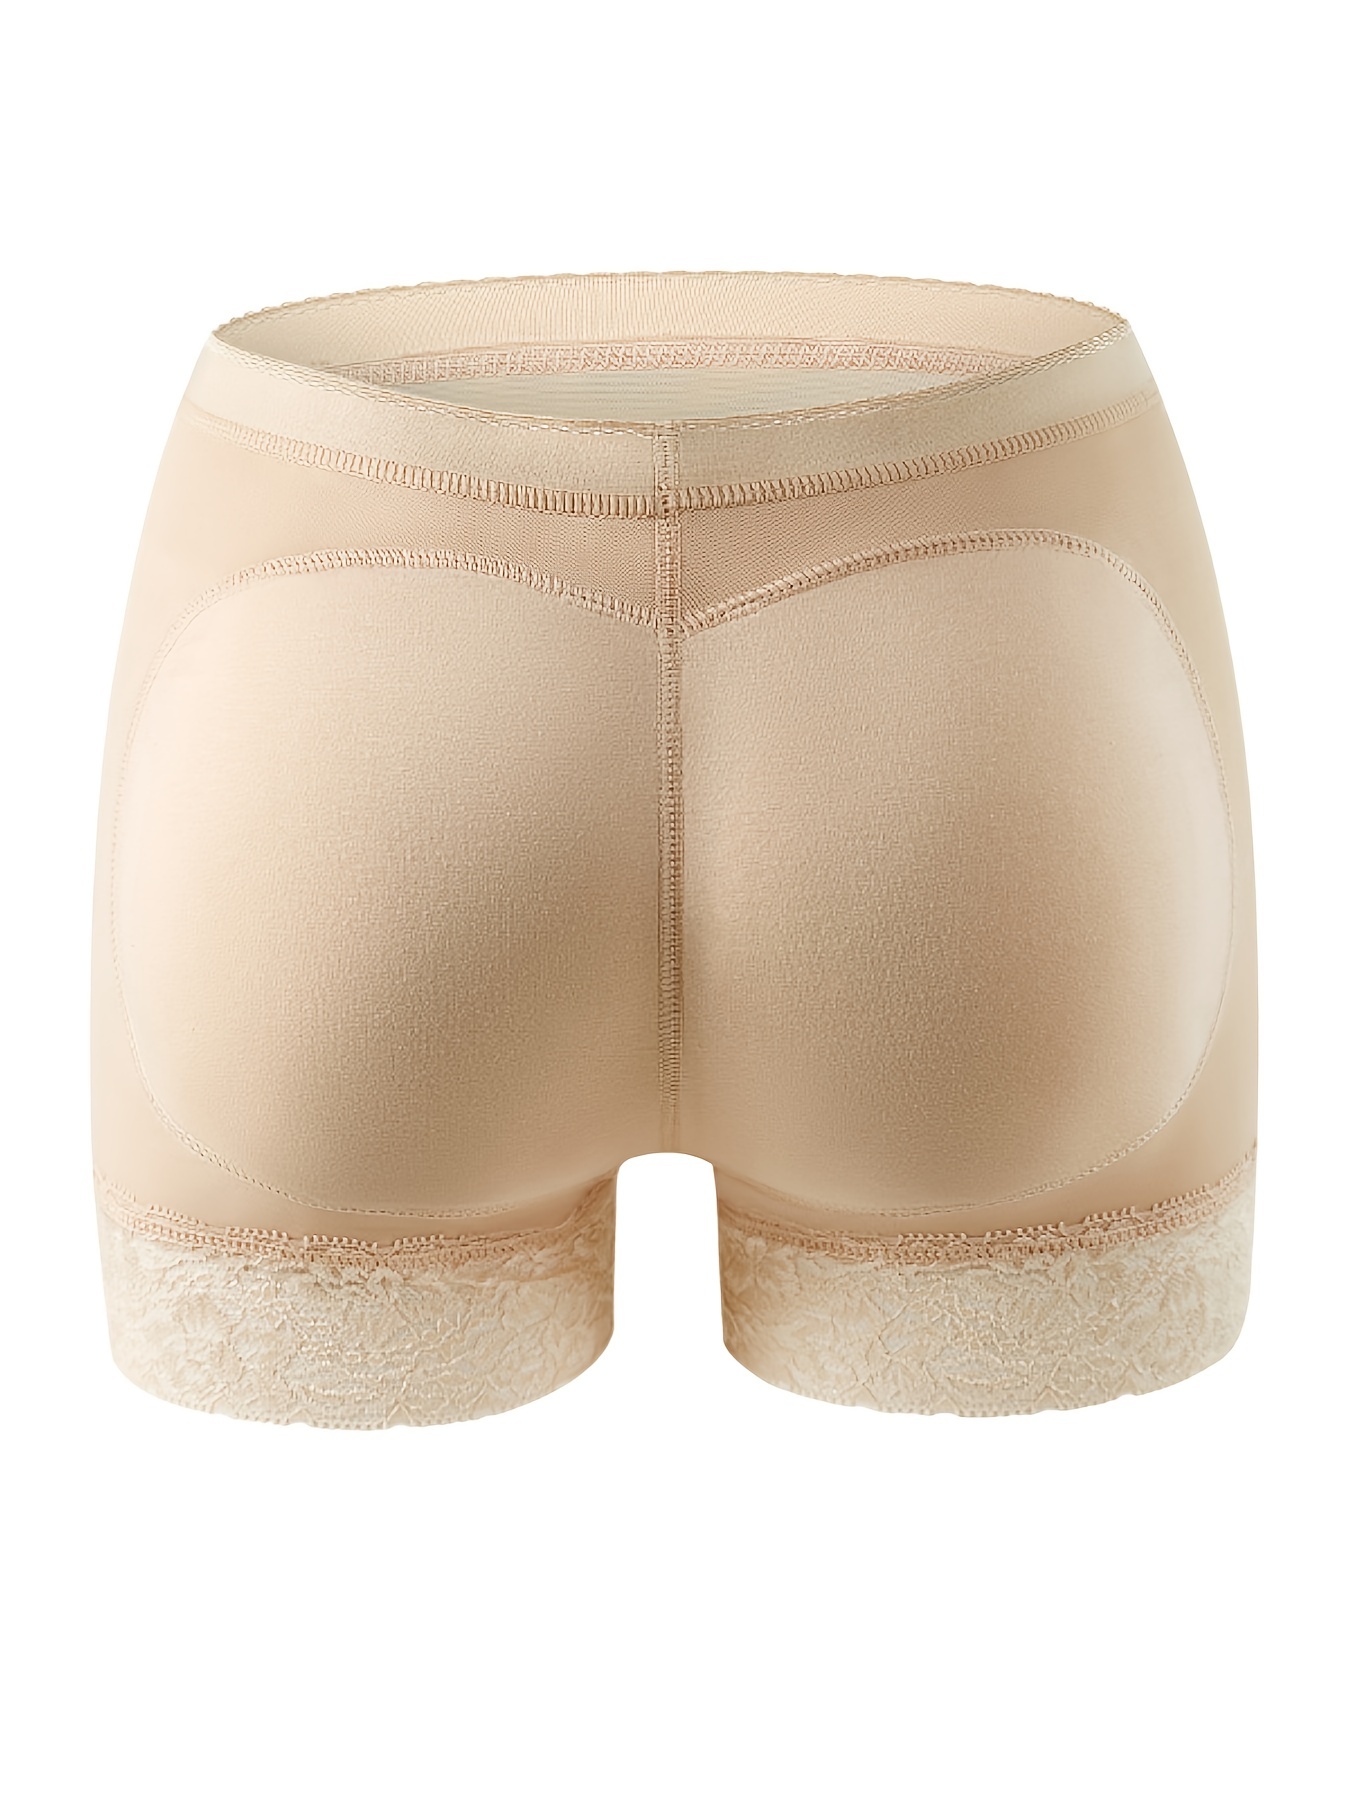 Women's Butt Lifter Boy Shorts Body Shaper Enhancer Panties, Beige, M